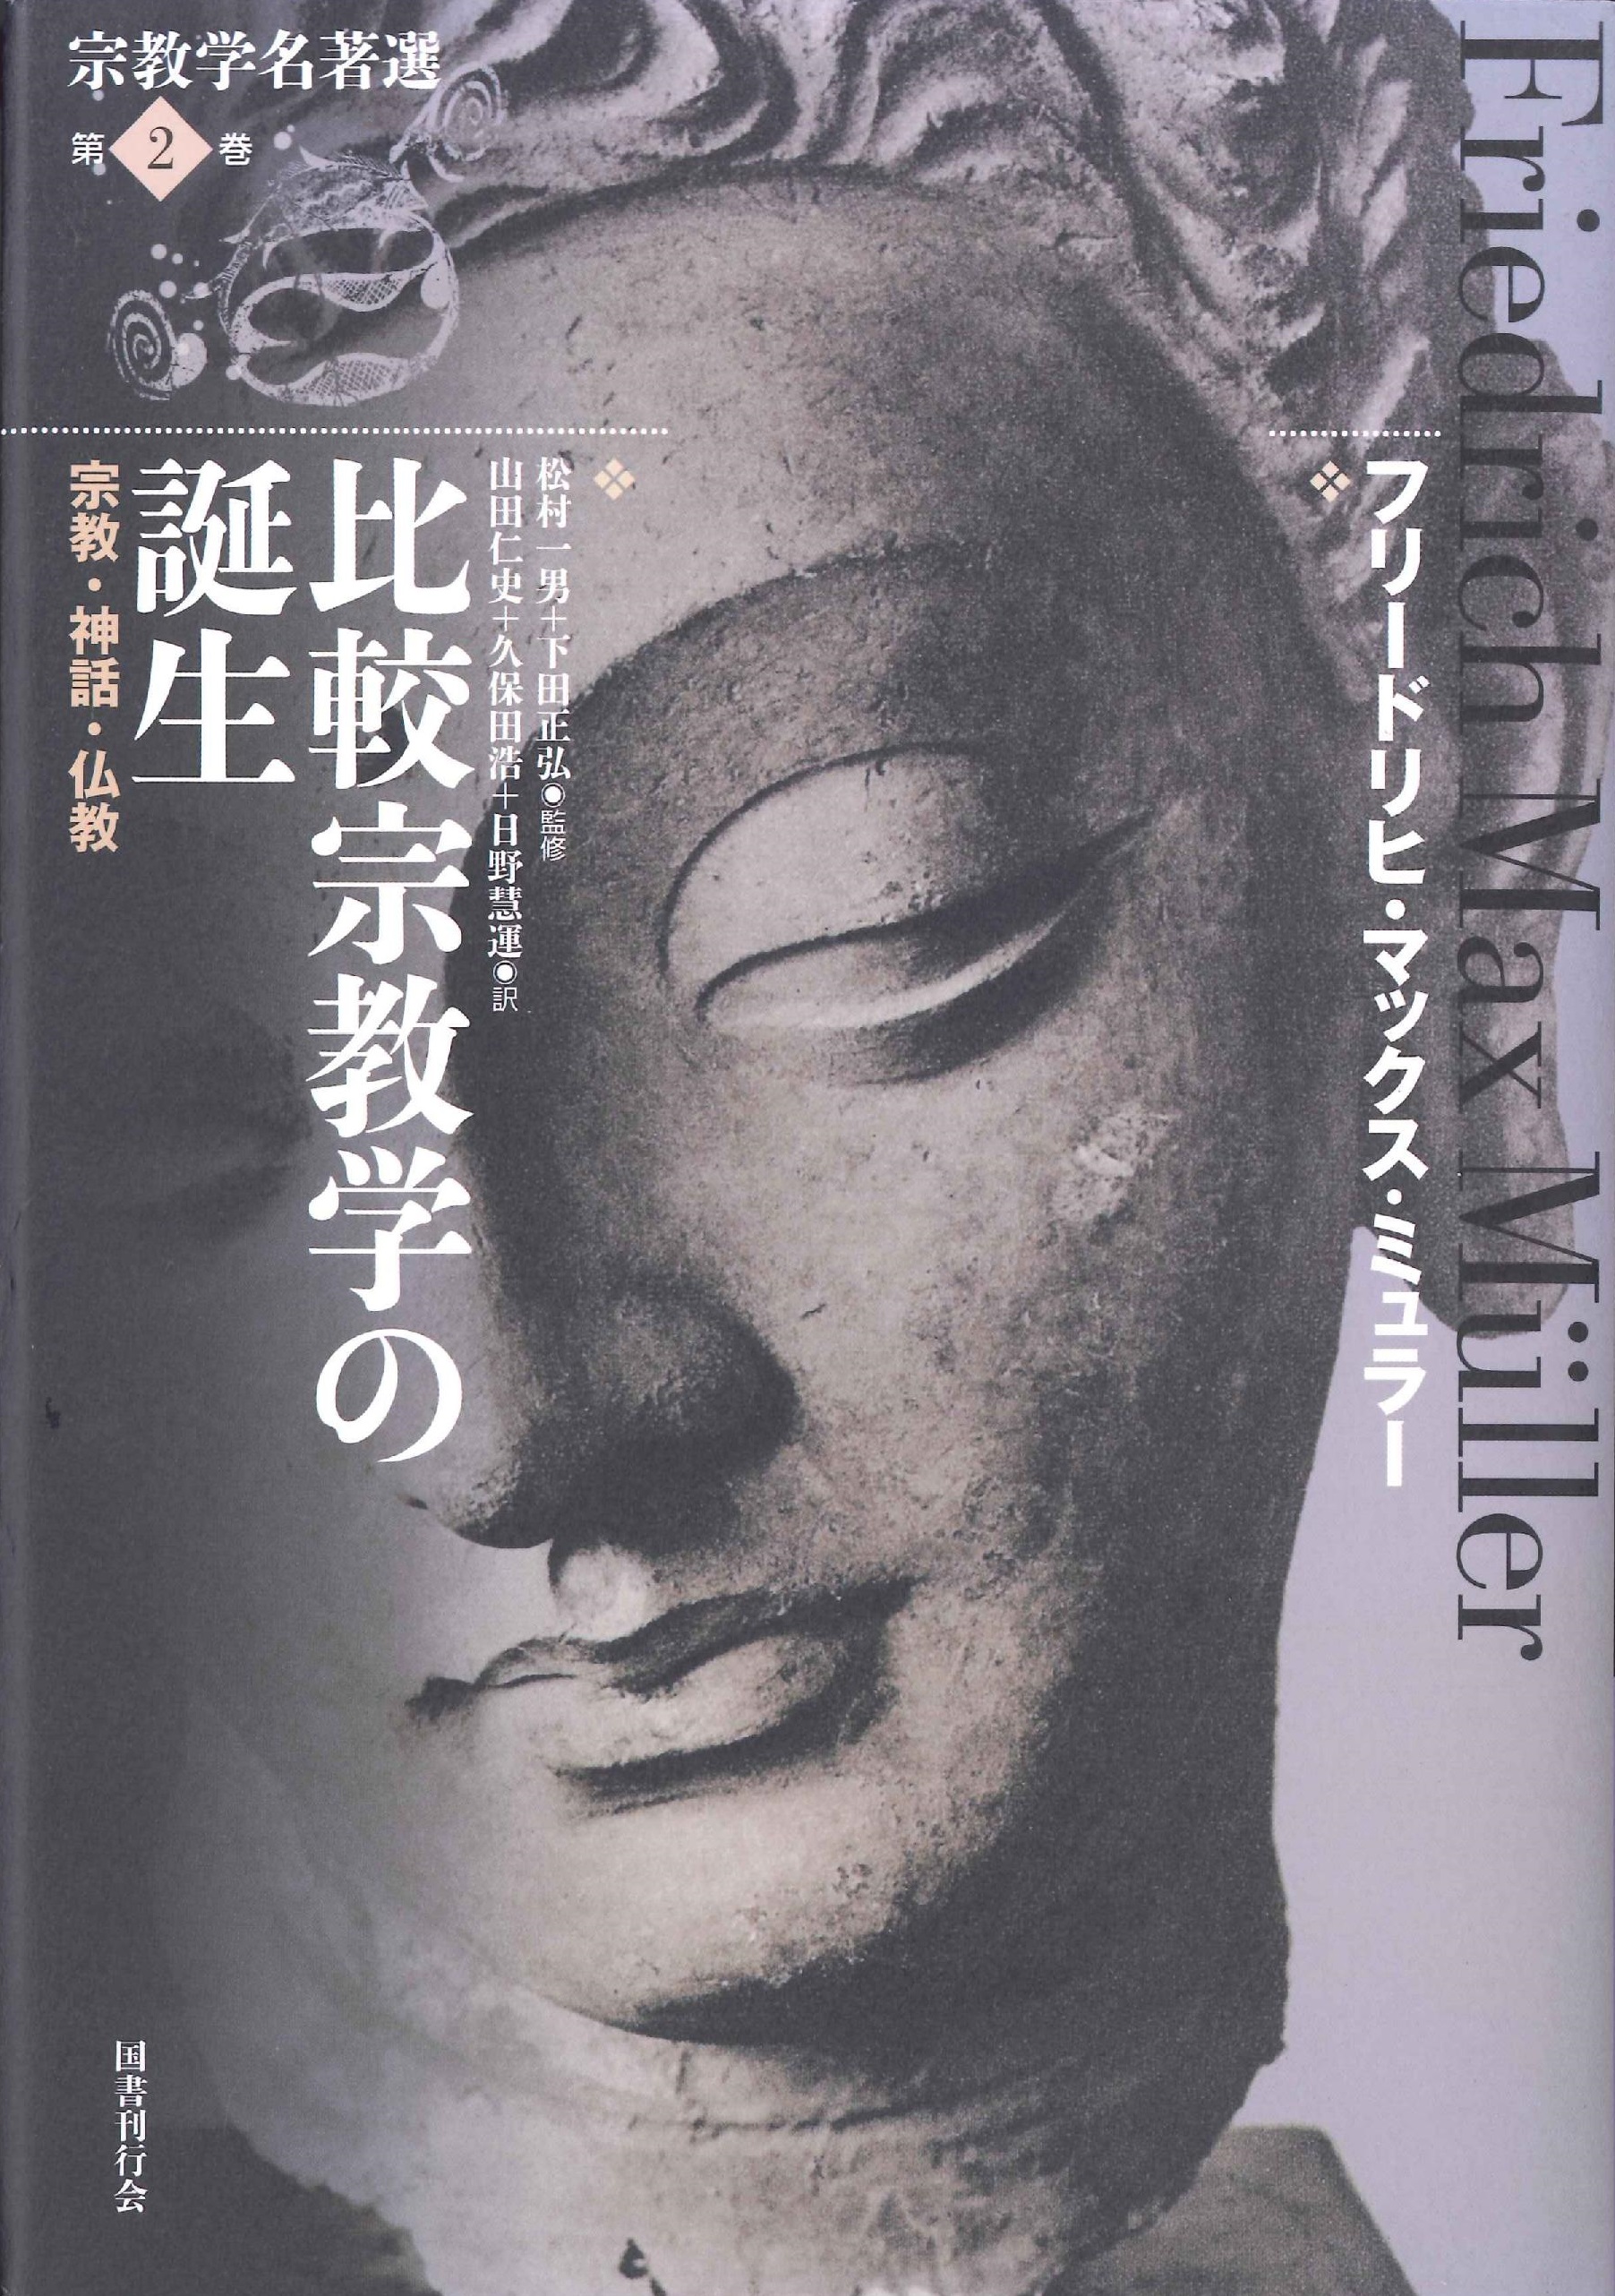 表紙全体に仏像の顔の写真